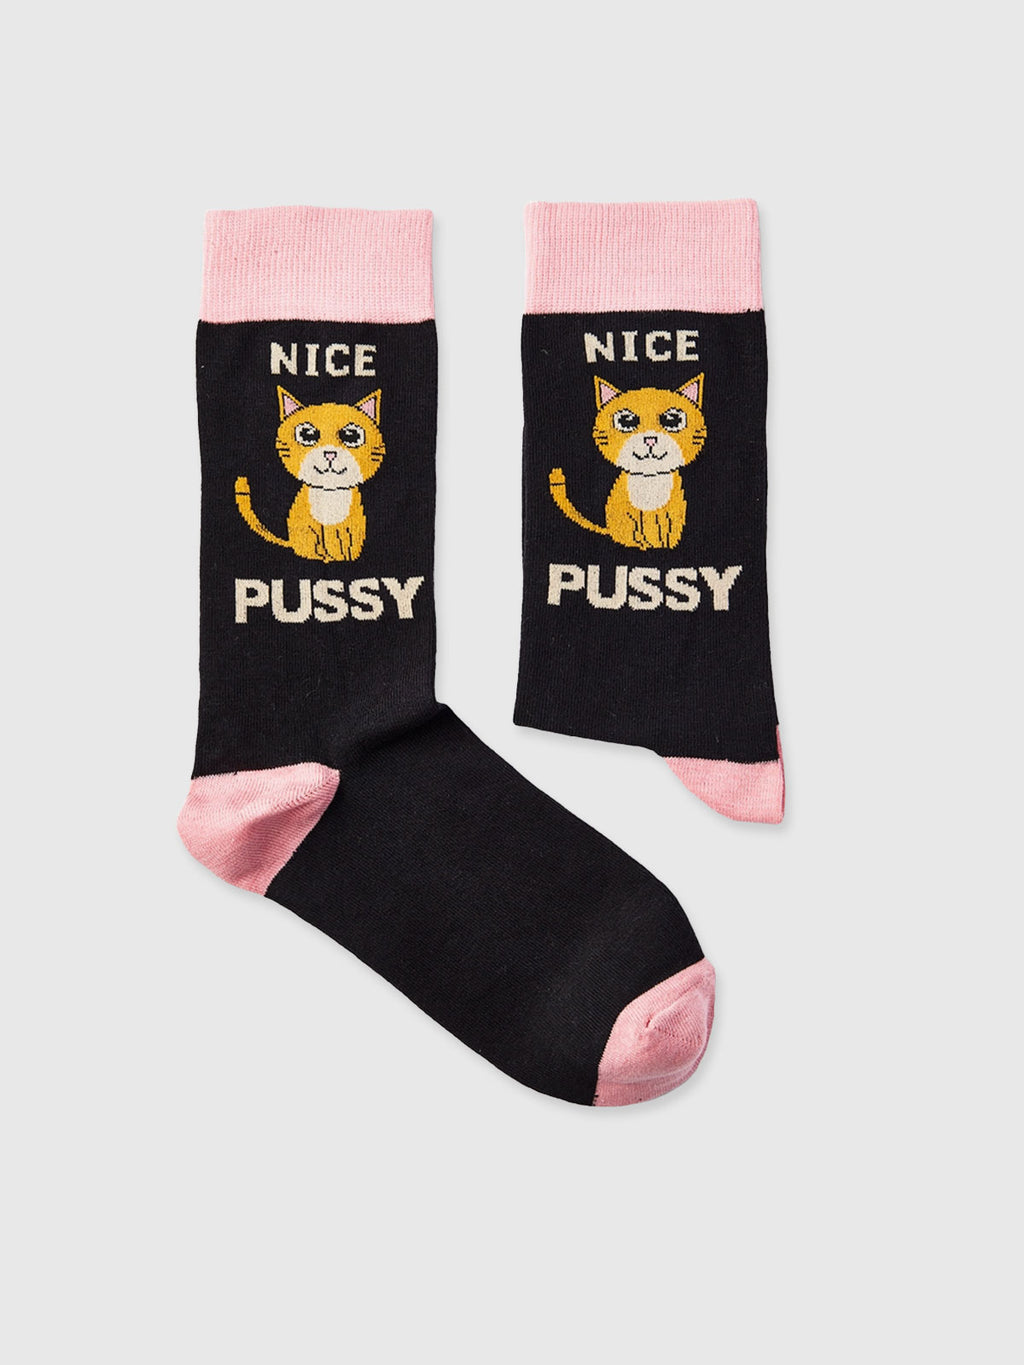 Nice Pussy Socks - Unisex